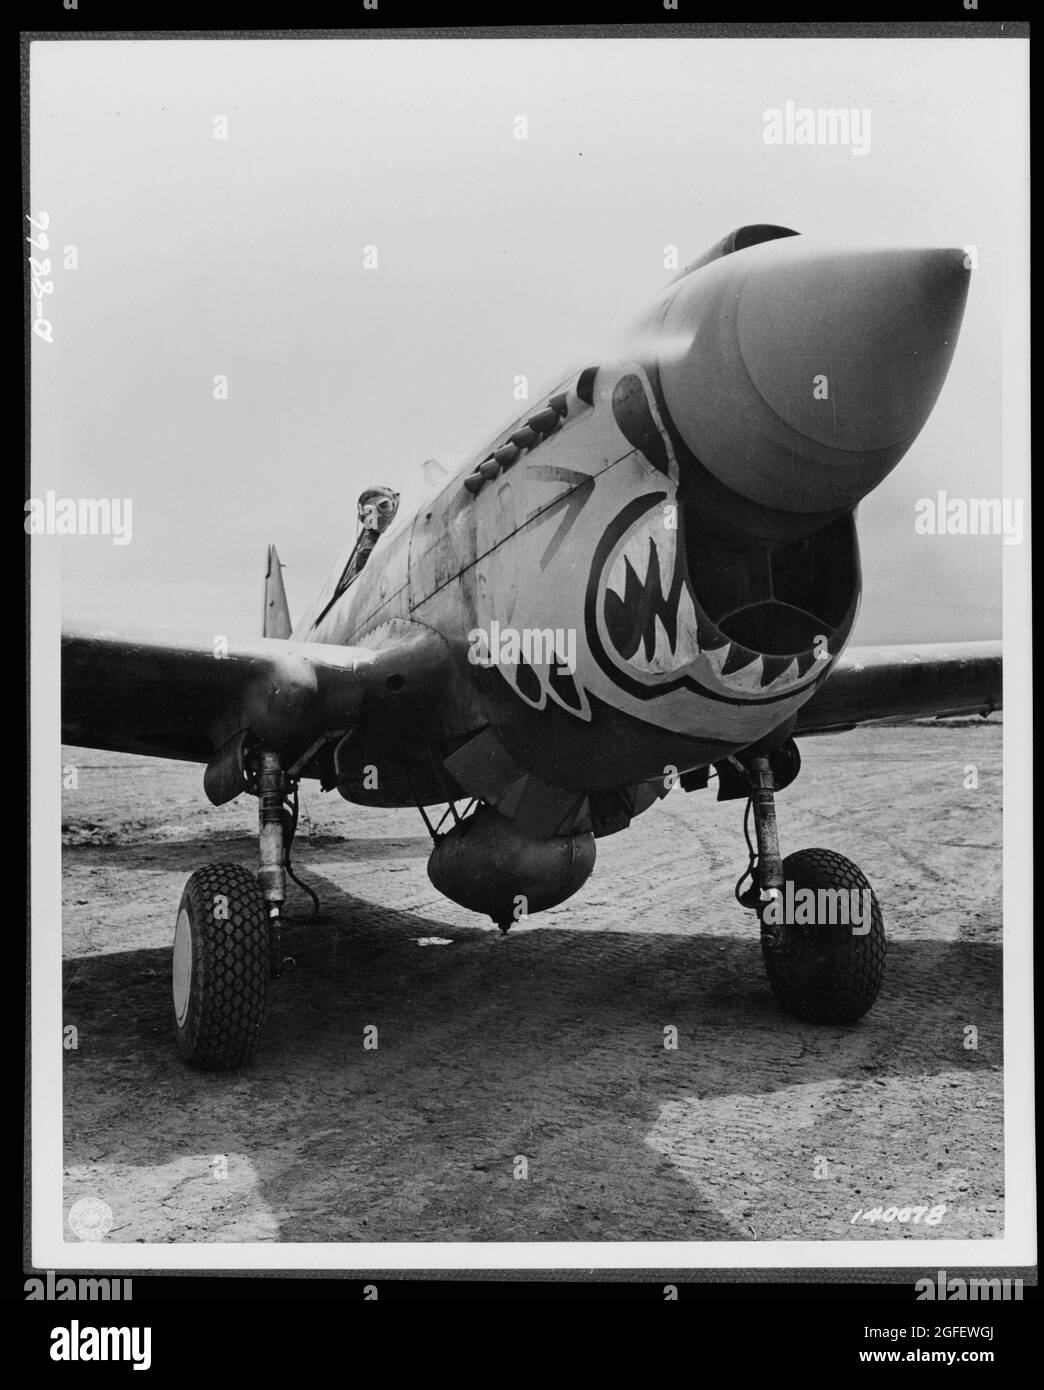 Flugzeug. Armee. Einer der verdoppelten „Flying Tigers“, der bereit ist, in einem Curtiss P-40 „Warhawk“-Kampfflugzeug von einem Alaskan-Punkt abzuheben. 1944. Stockfoto